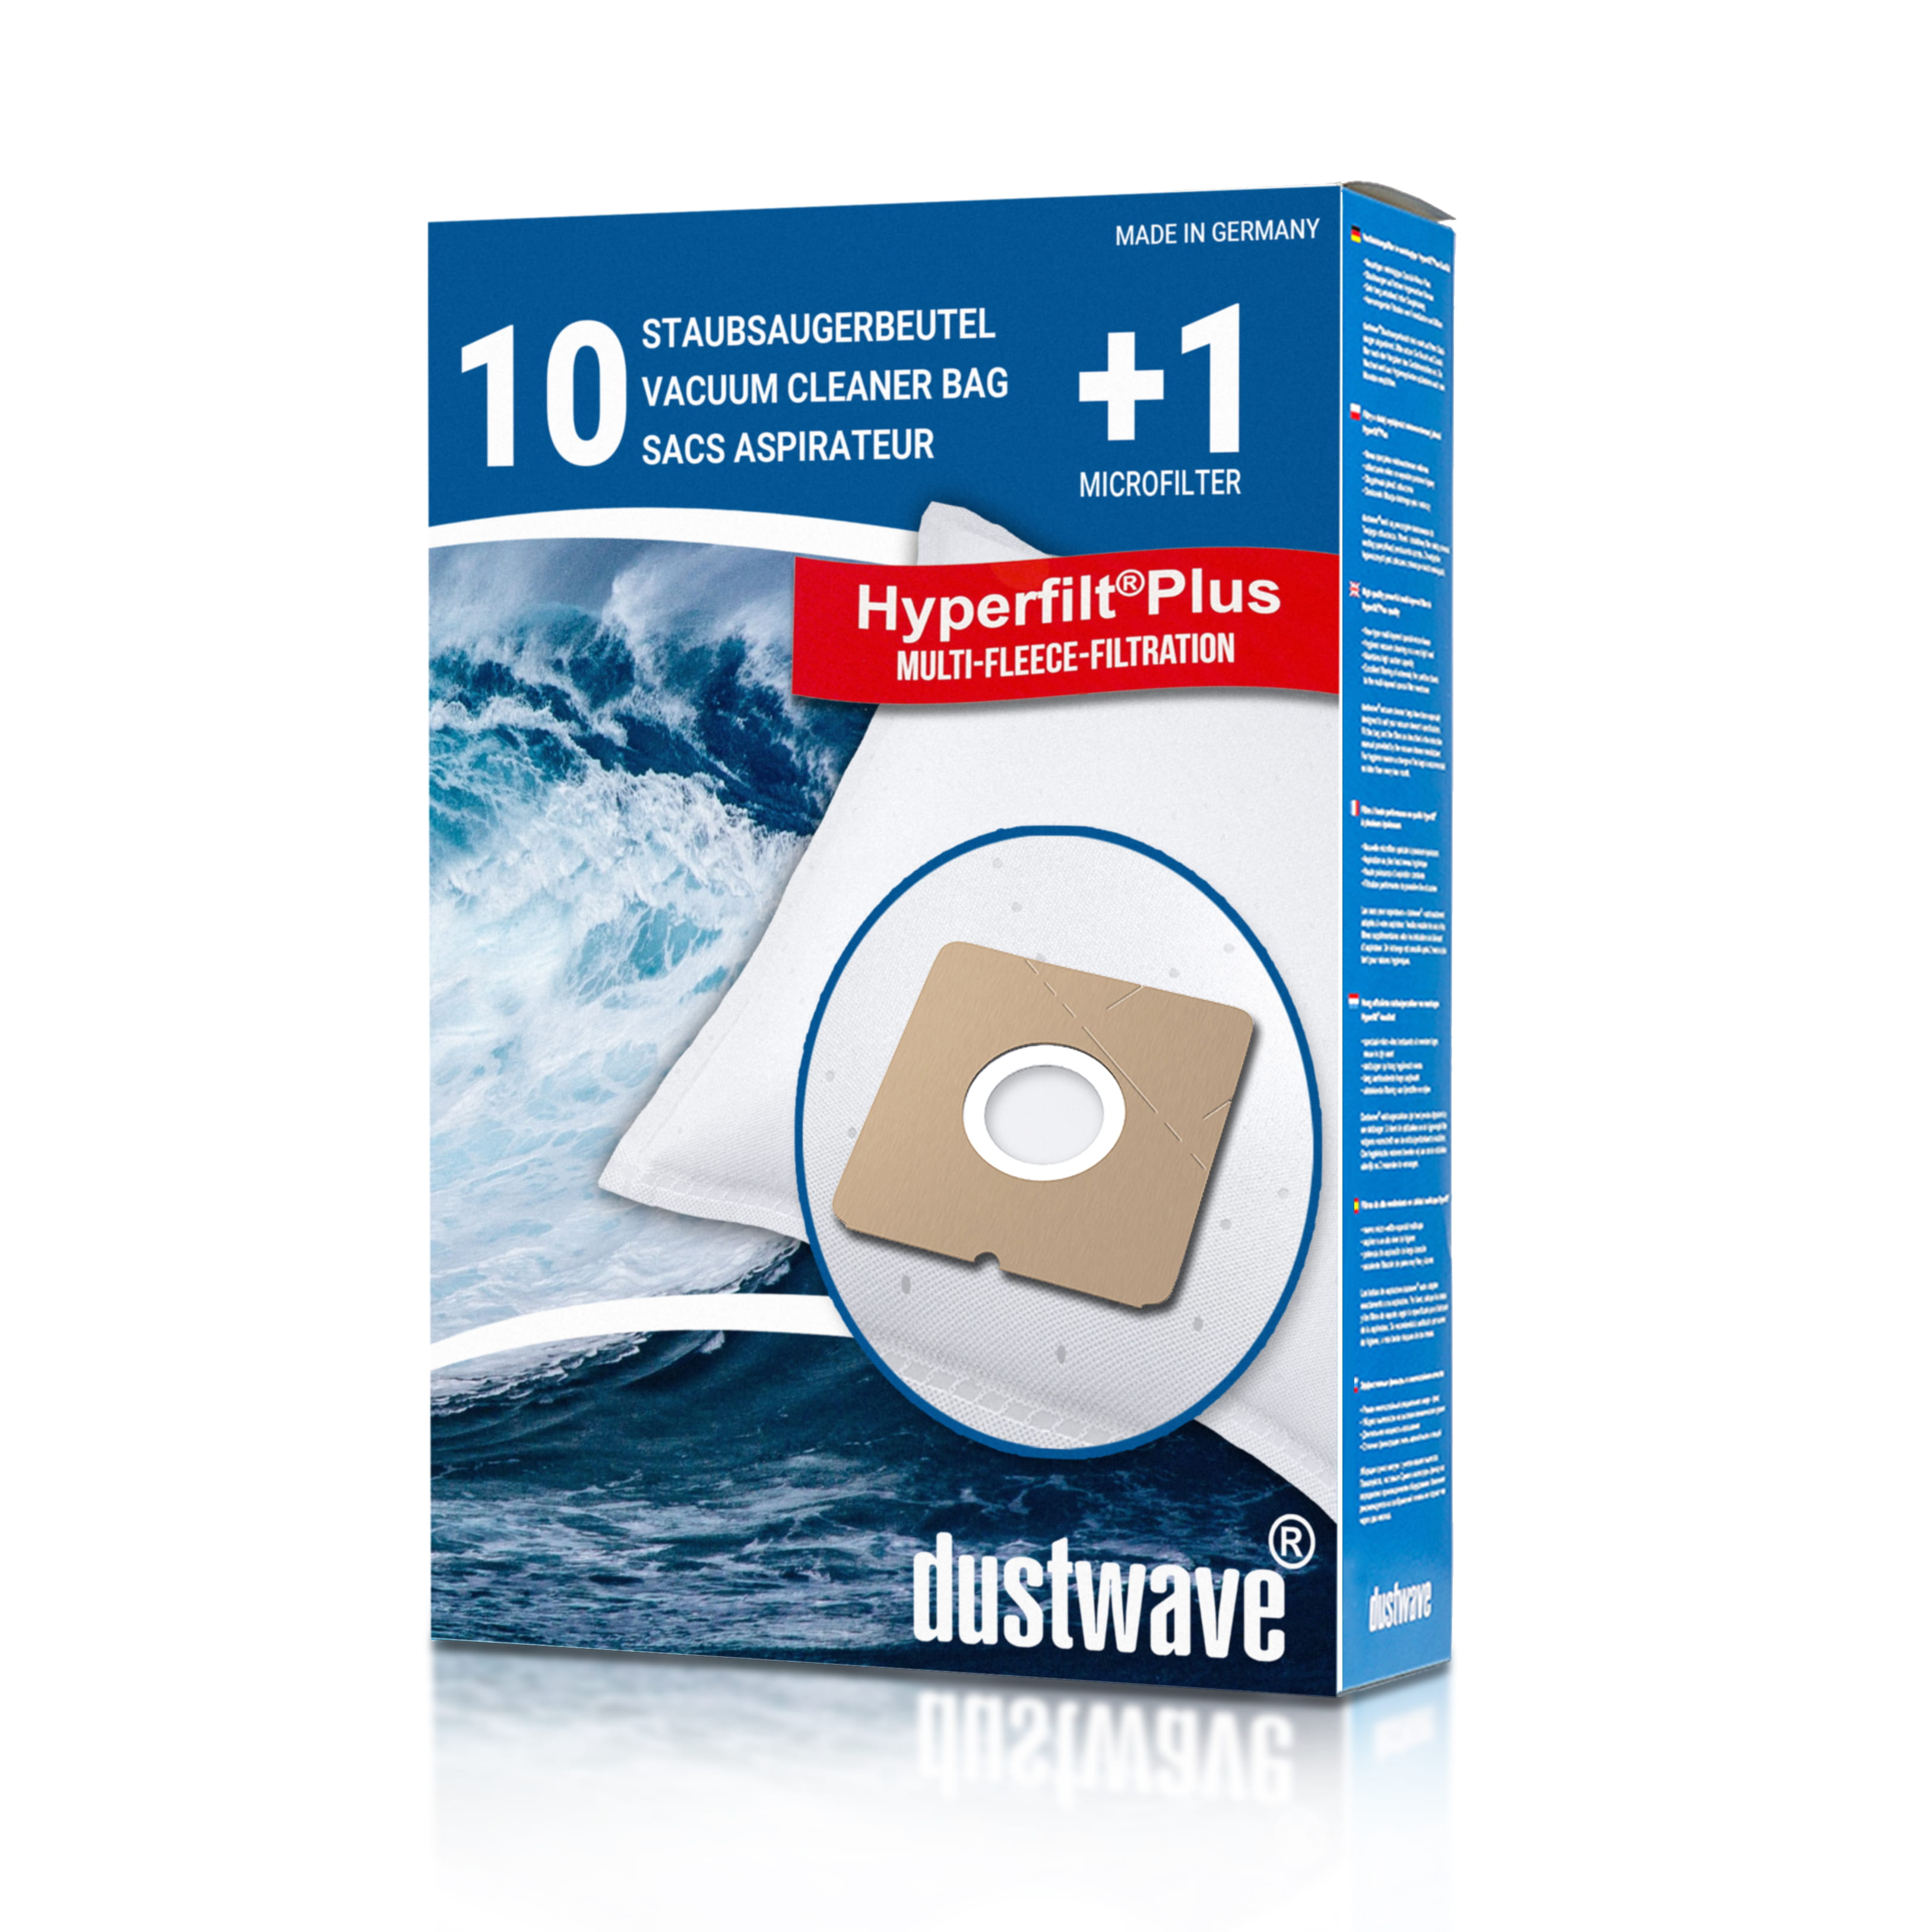 Dustwave® 10 Staubsaugerbeutel für Cameron CVC 1010 - hocheffizient, mehrlagiges Mikrovlies mit Hygieneverschluss - Made in Germany